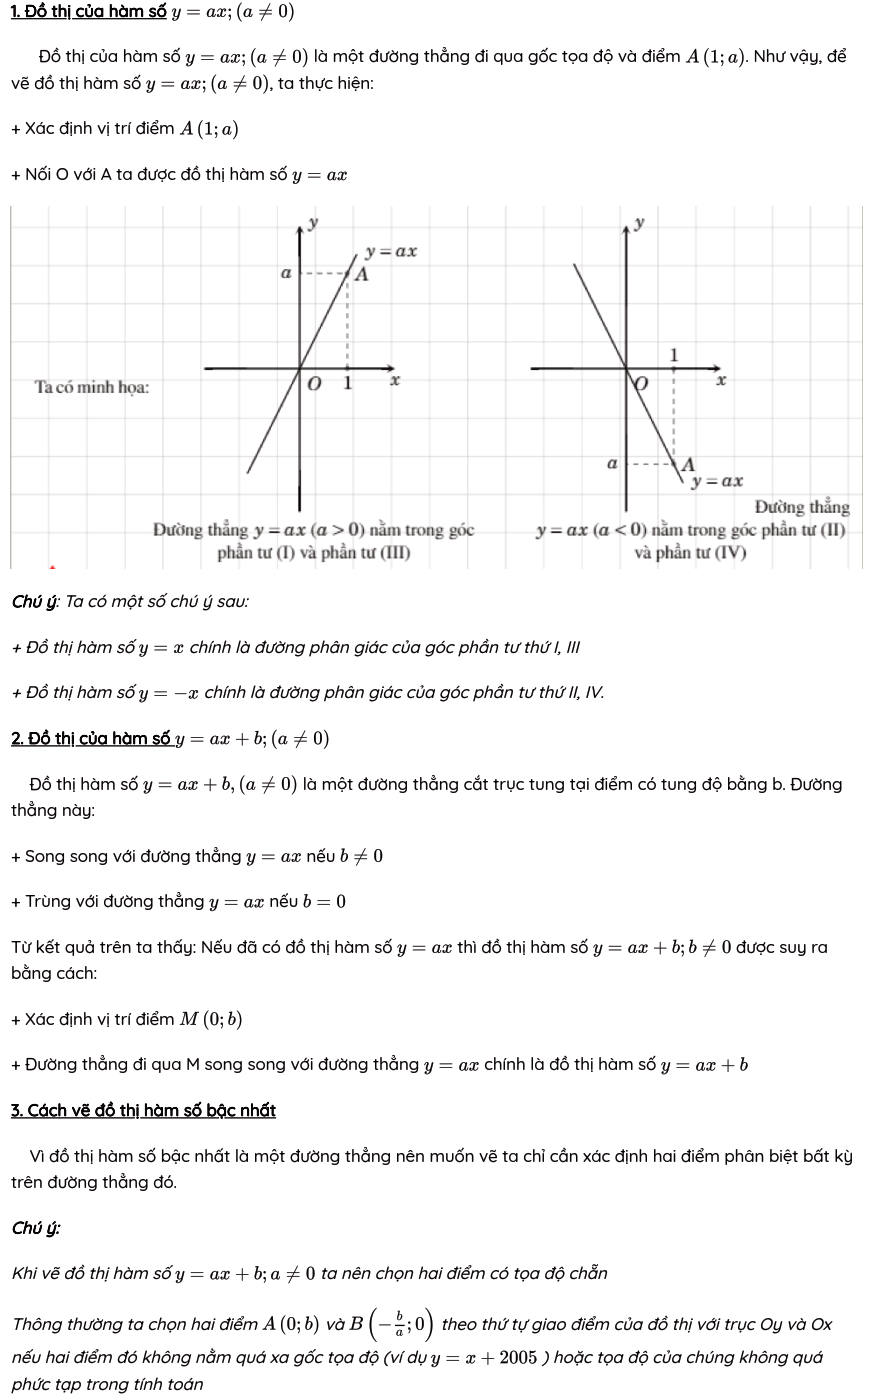 Cách vẽ đồ thị hàm số bậc nhất y=ax+b